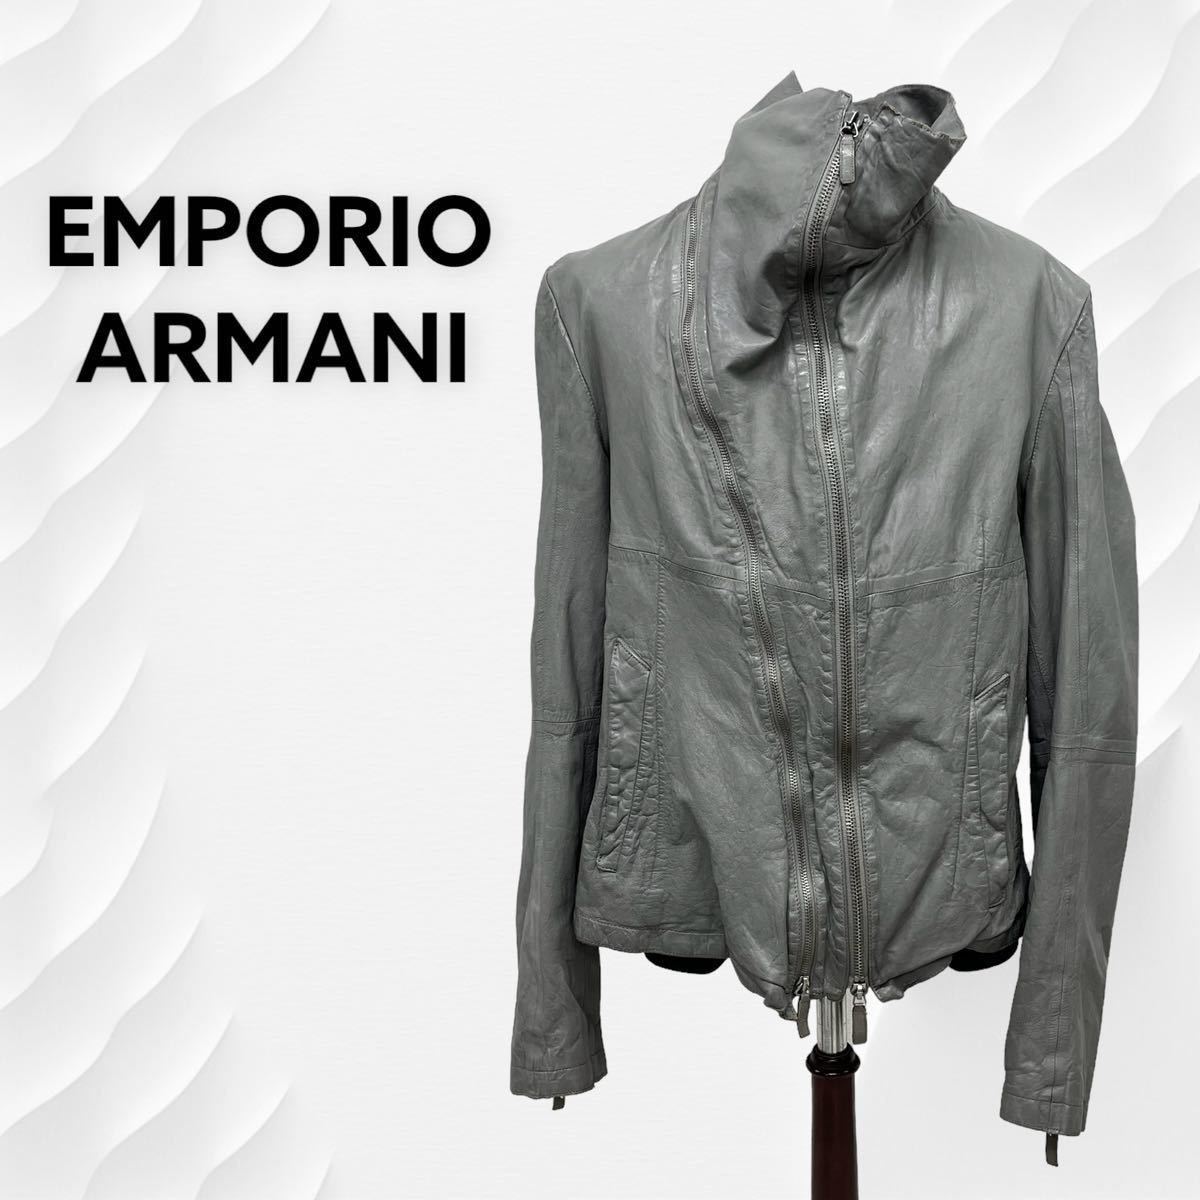 EMPORIO ARMANI エンポリオ アルマーニ 羊革 ラムレザー ジップデザイン ハイカラー レザージャケット メンズ J1B03P